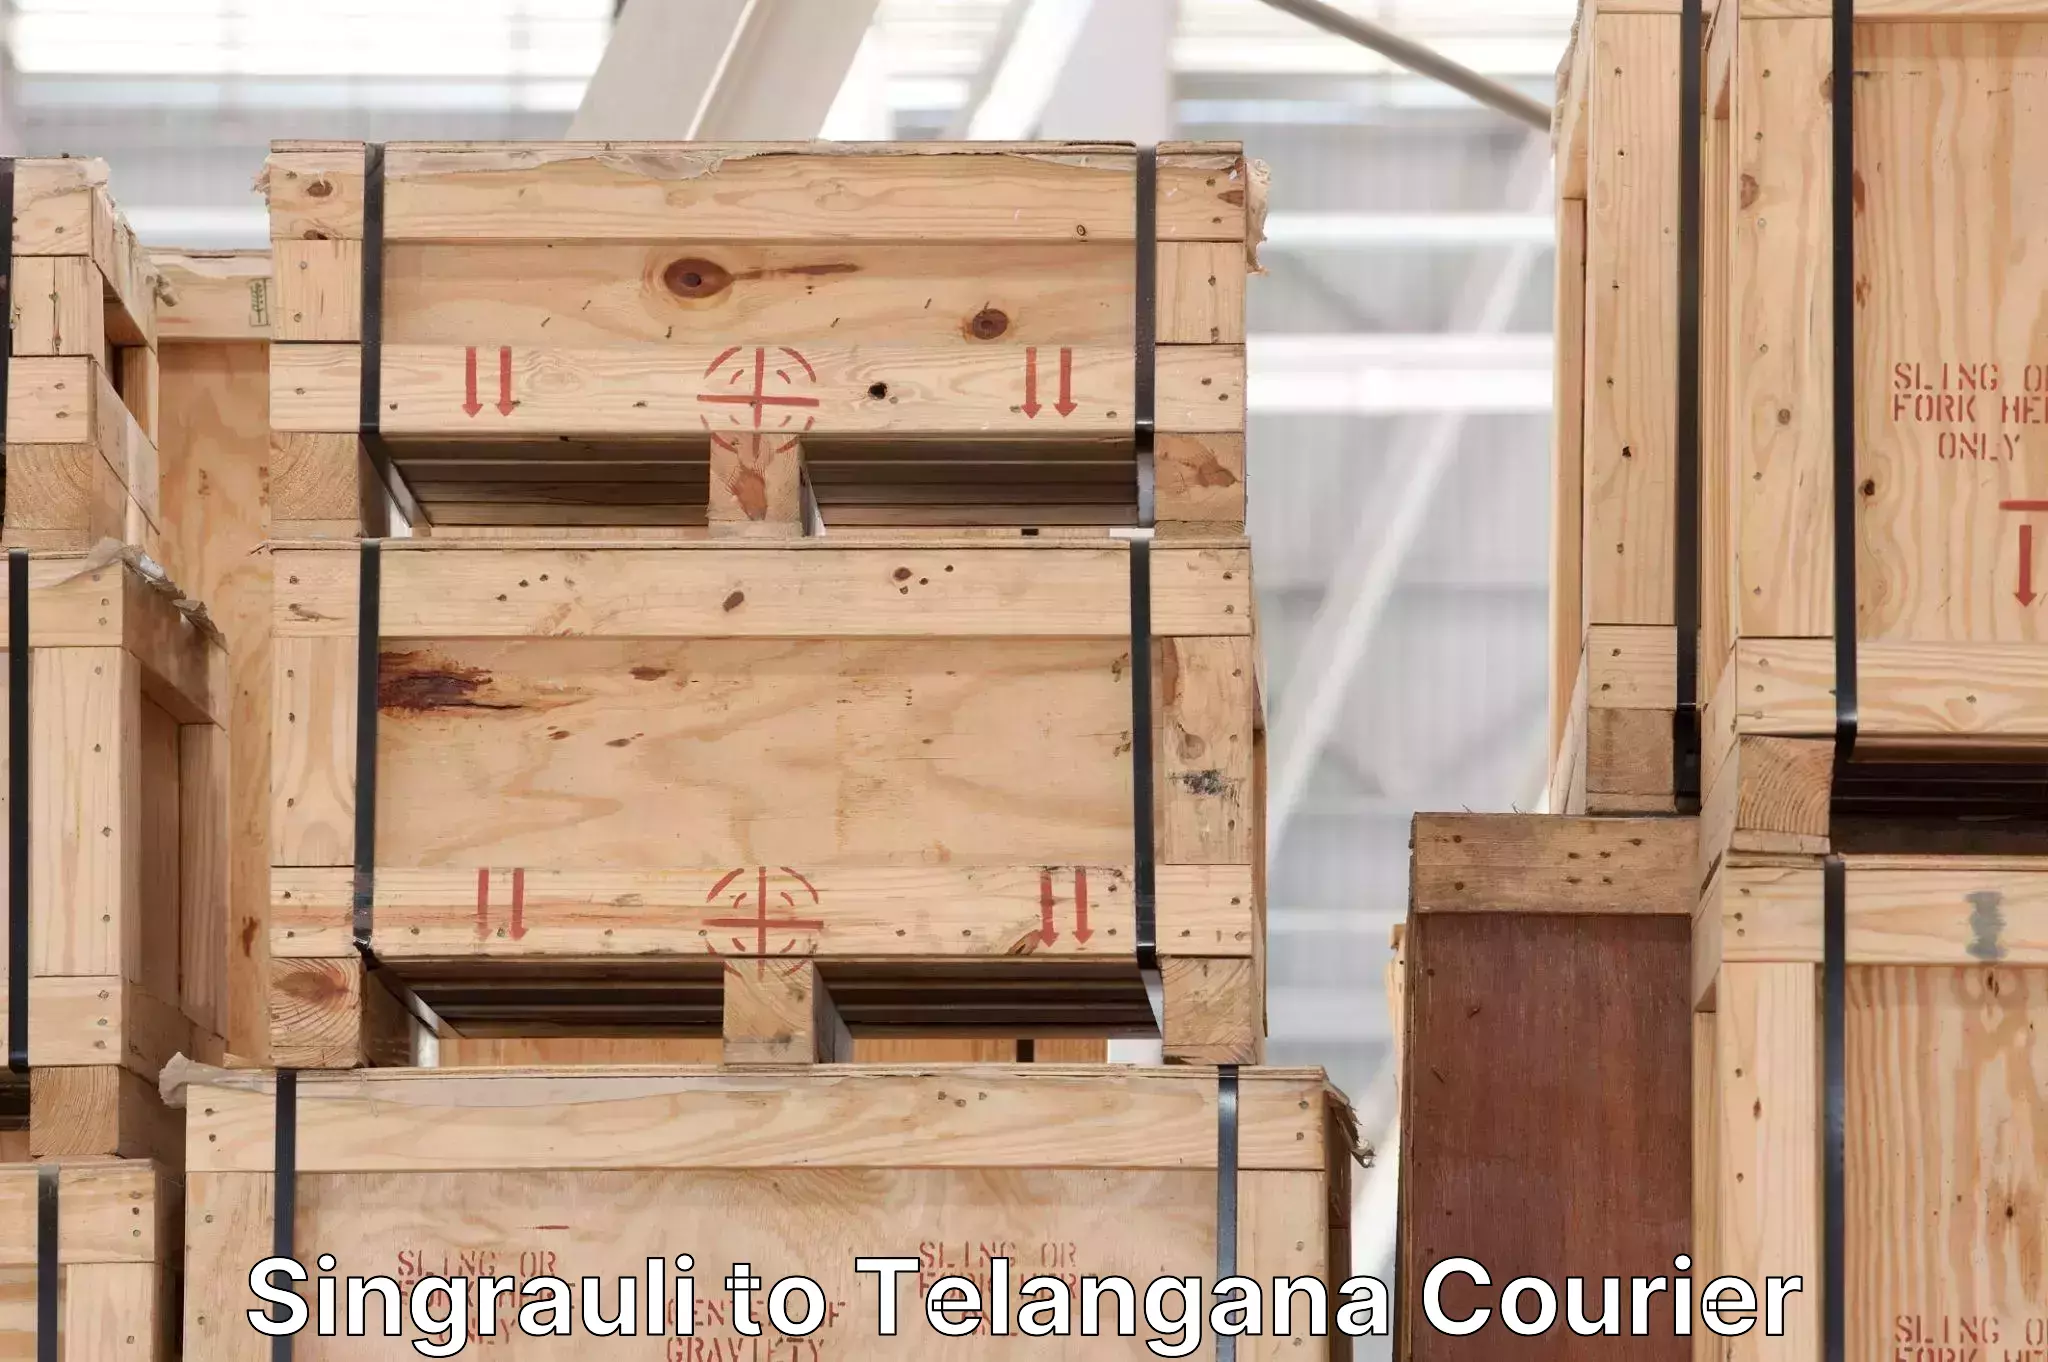 Baggage transport updates Singrauli to Telangana